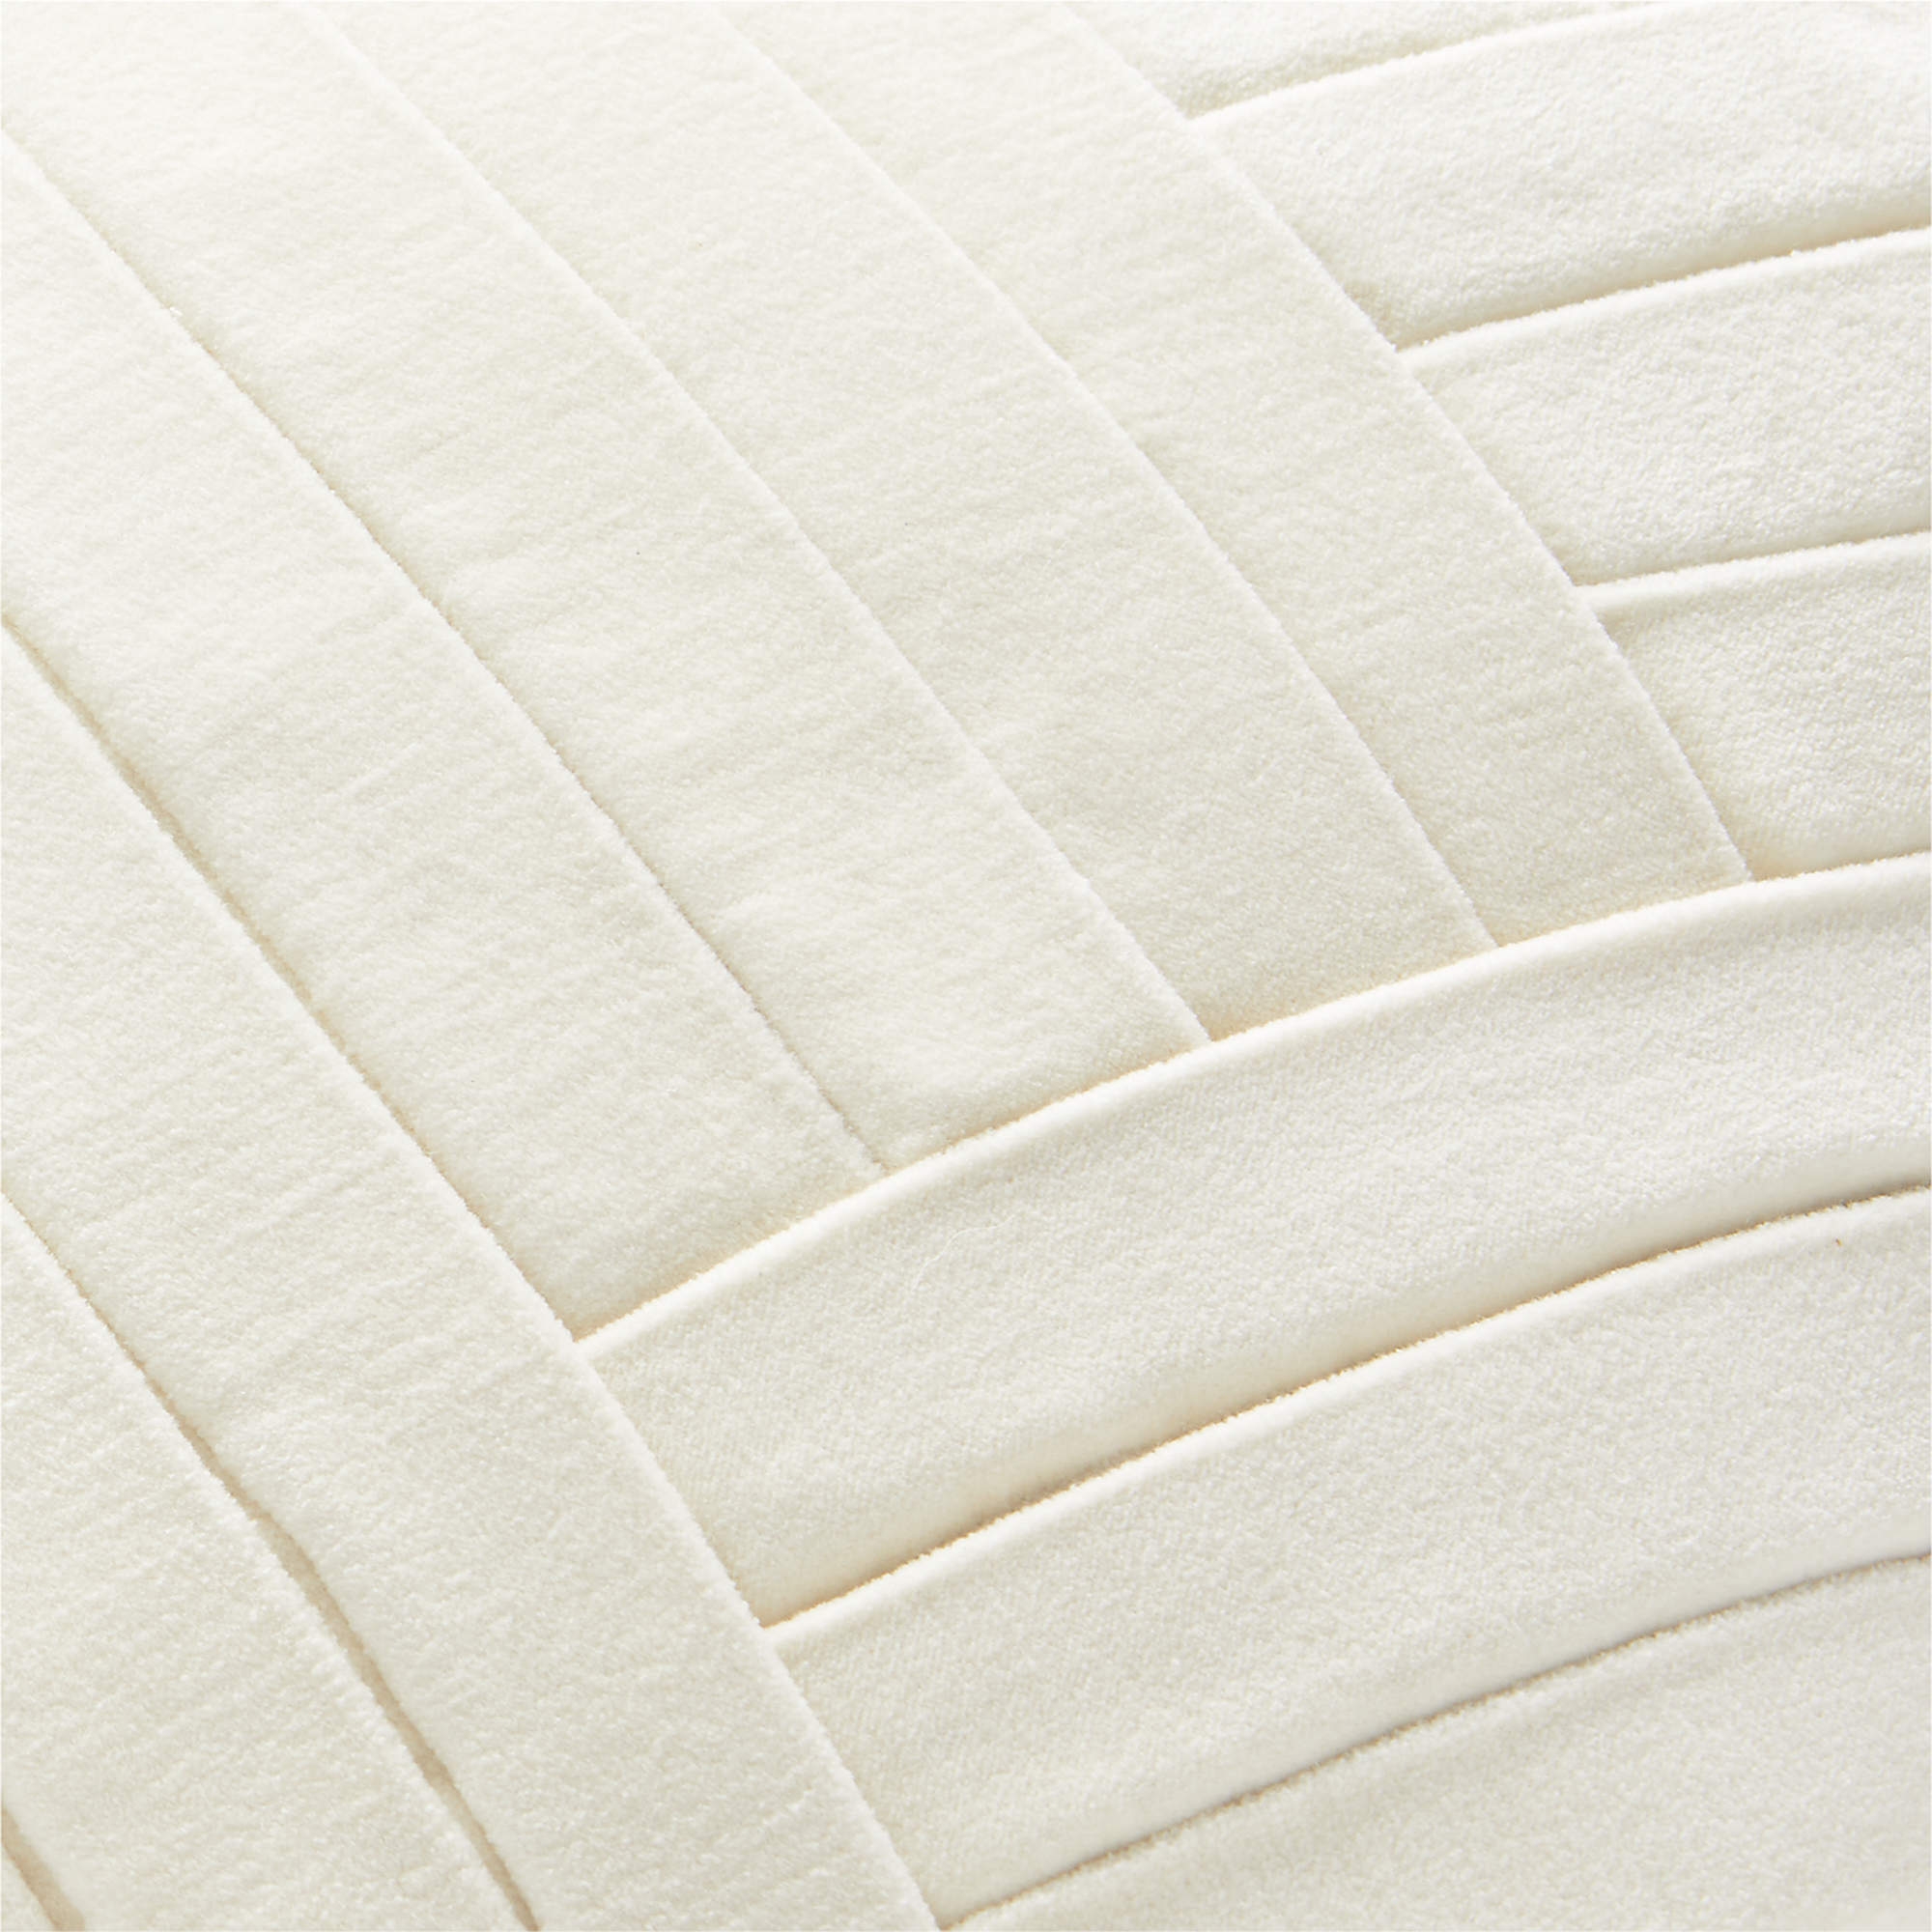 Leger Velvet Pillow, Down-Alternative Insert, Ivory, 18" x 18" - Image 3